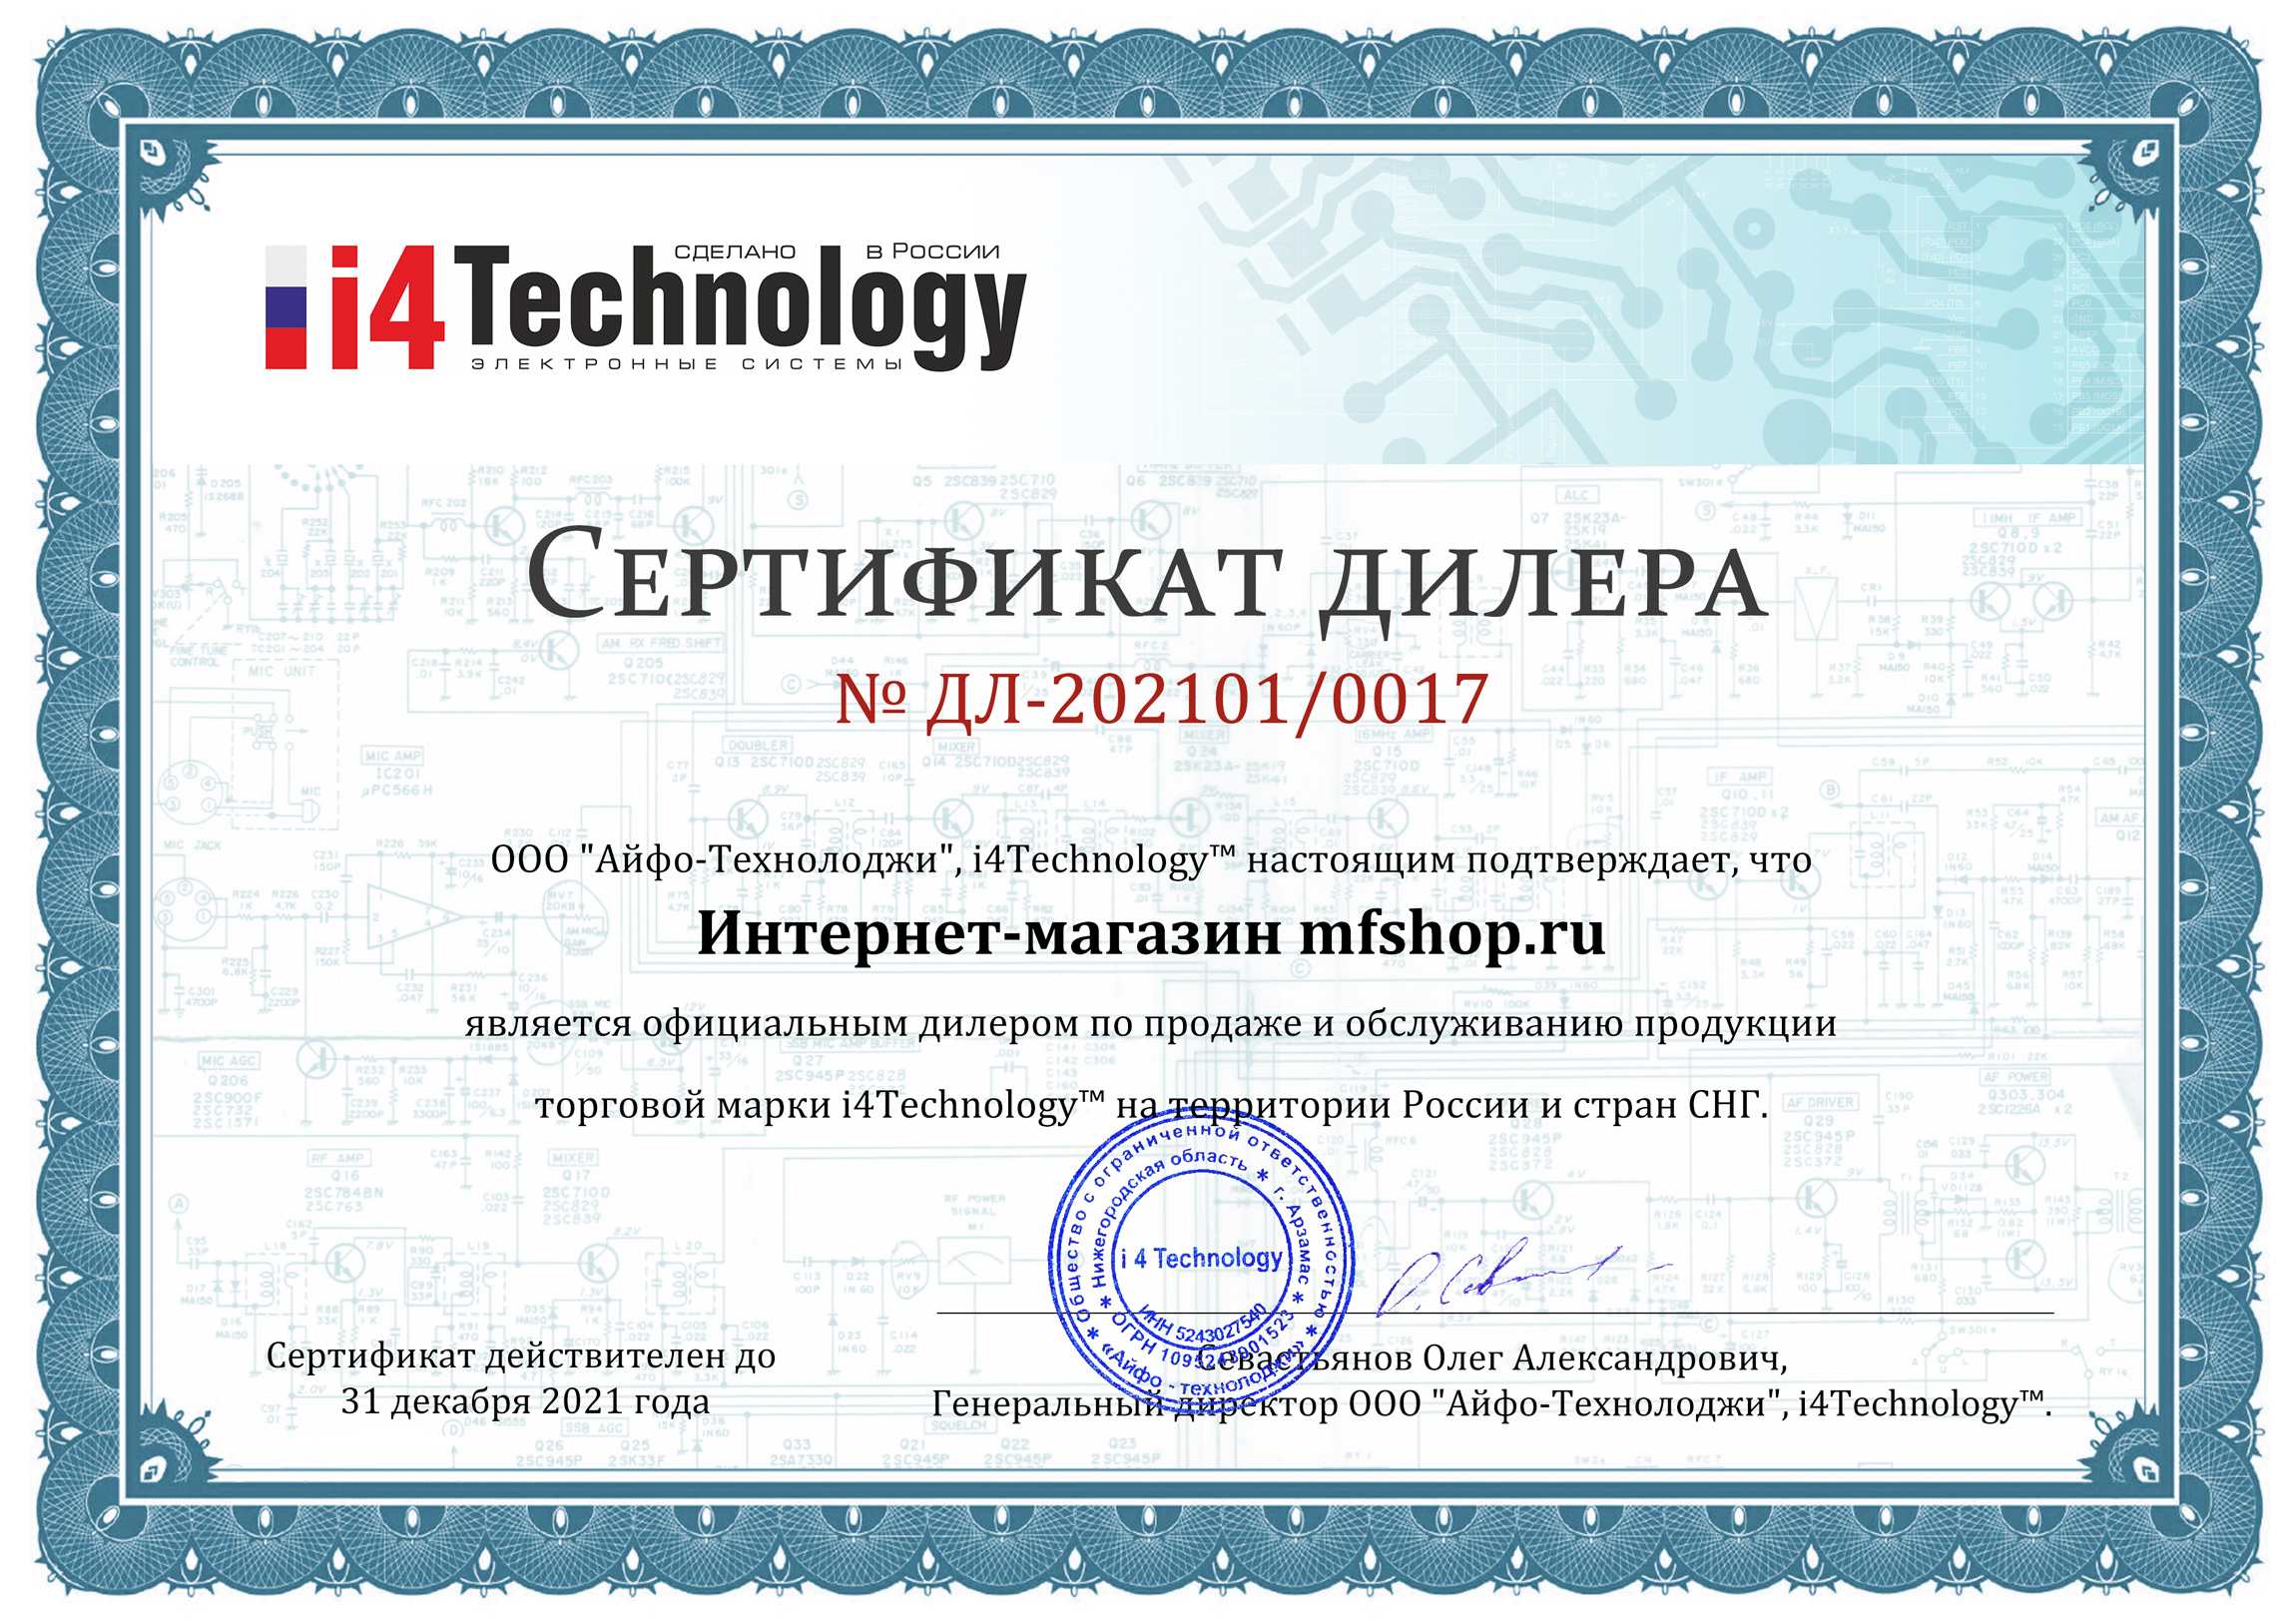 Сертификат дилера на право реализации продукции компании i4technology